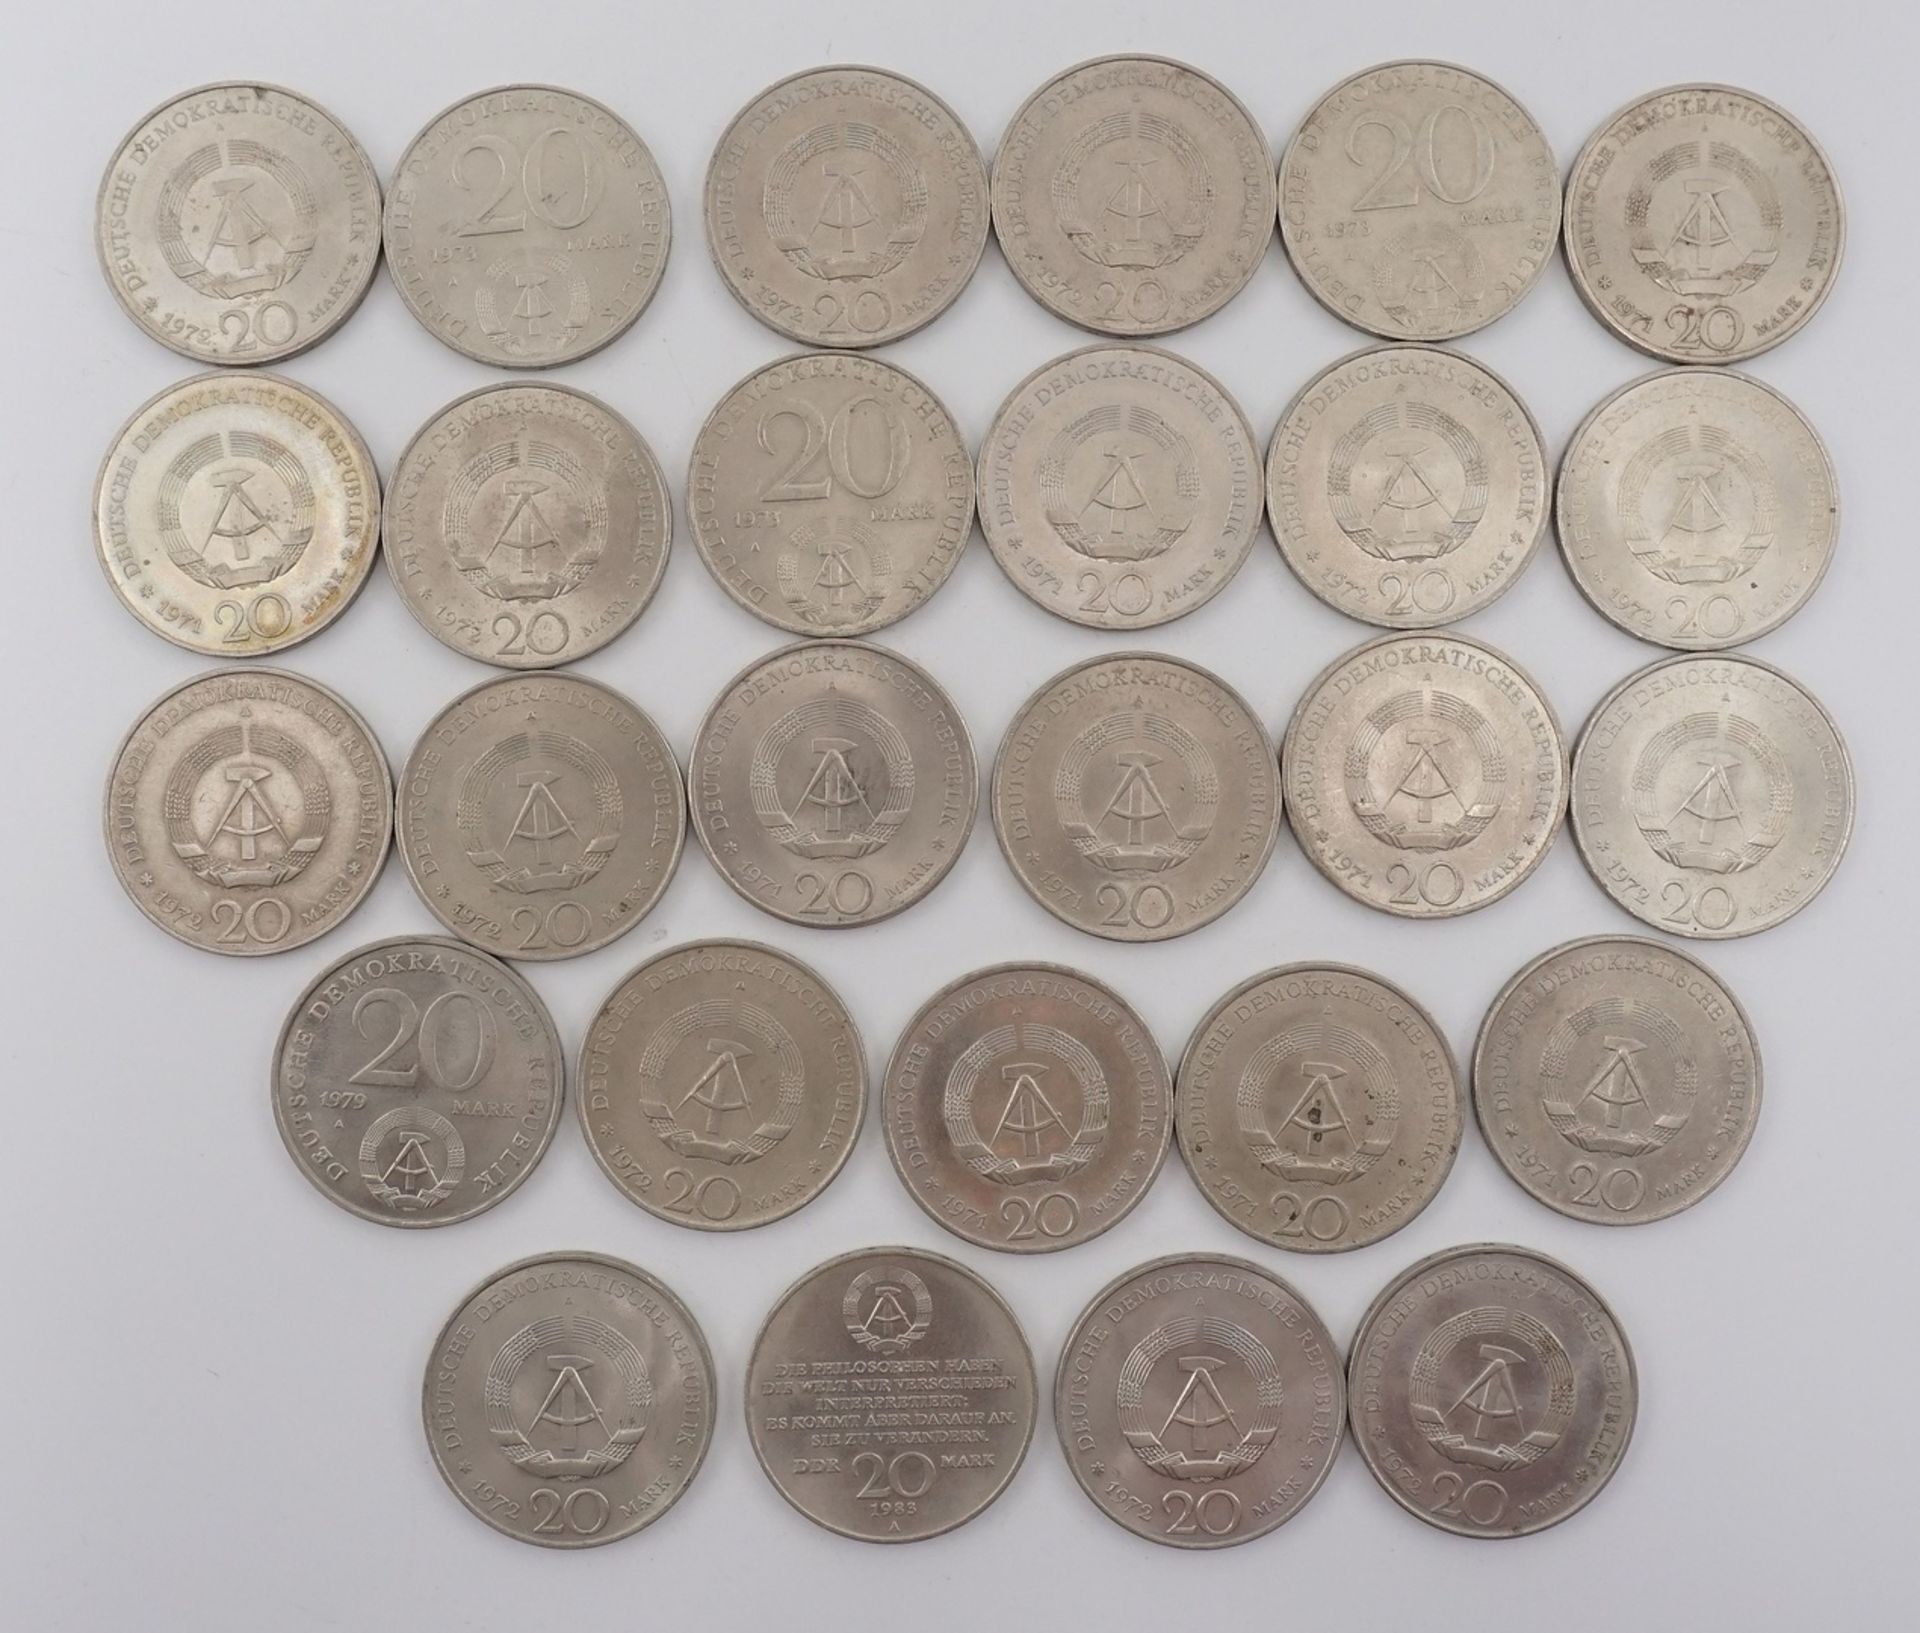 47 Umlaufmünzen, 10 und 20 DDR MarkKupfer / Nickel, 20 x 10 DDR Mark und 27 x 20 DDR Mark, Erhaltung - Image 2 of 5